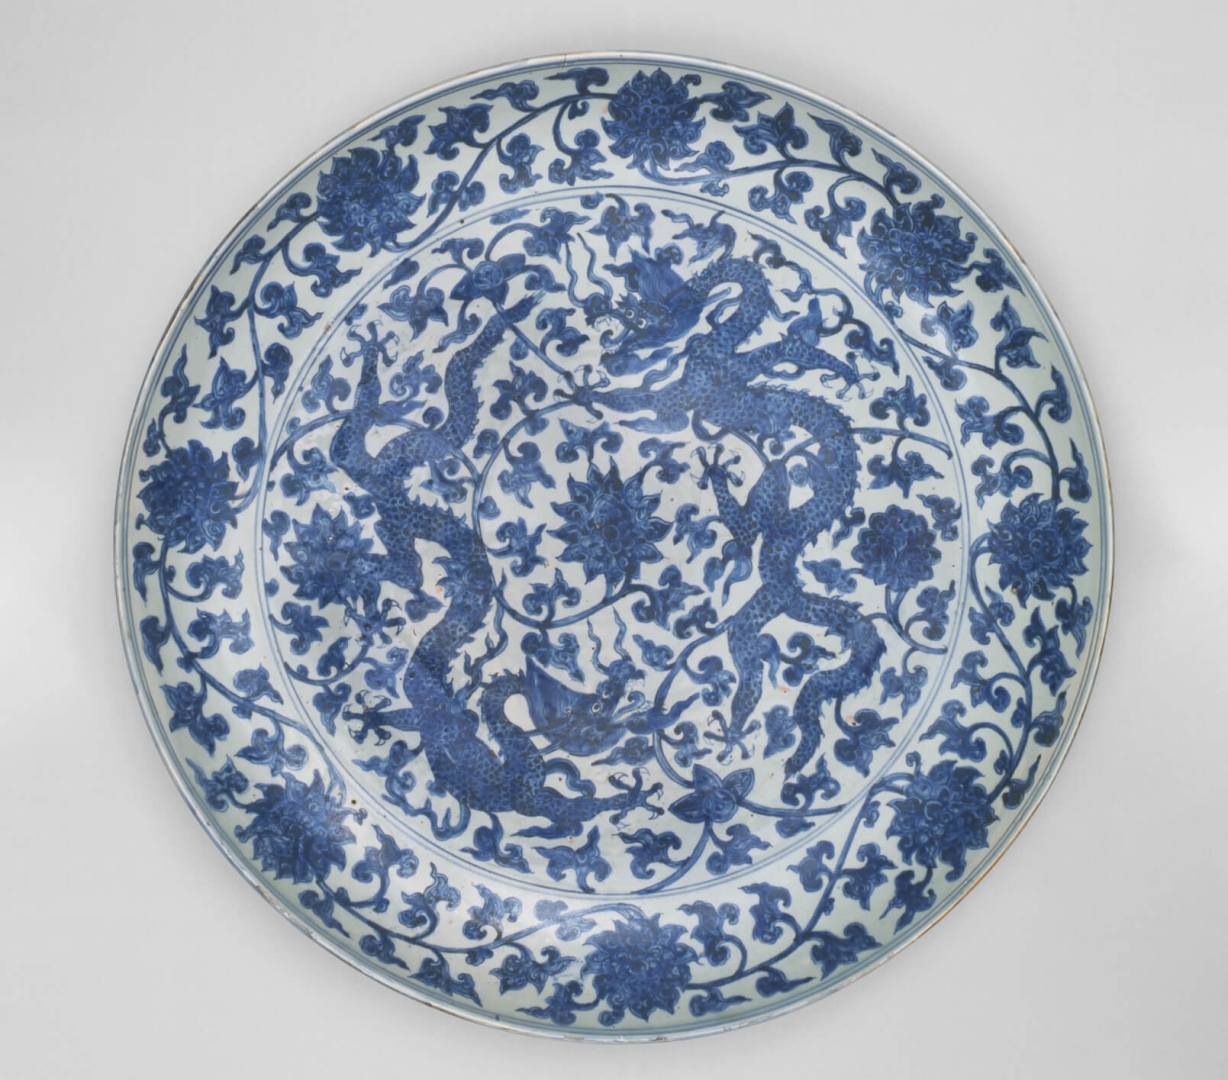 Grande assiette en <br />
porcelaine bleu et blanc <br />
avec des motifs du dragon <br />
parmi des lotus imbriqués